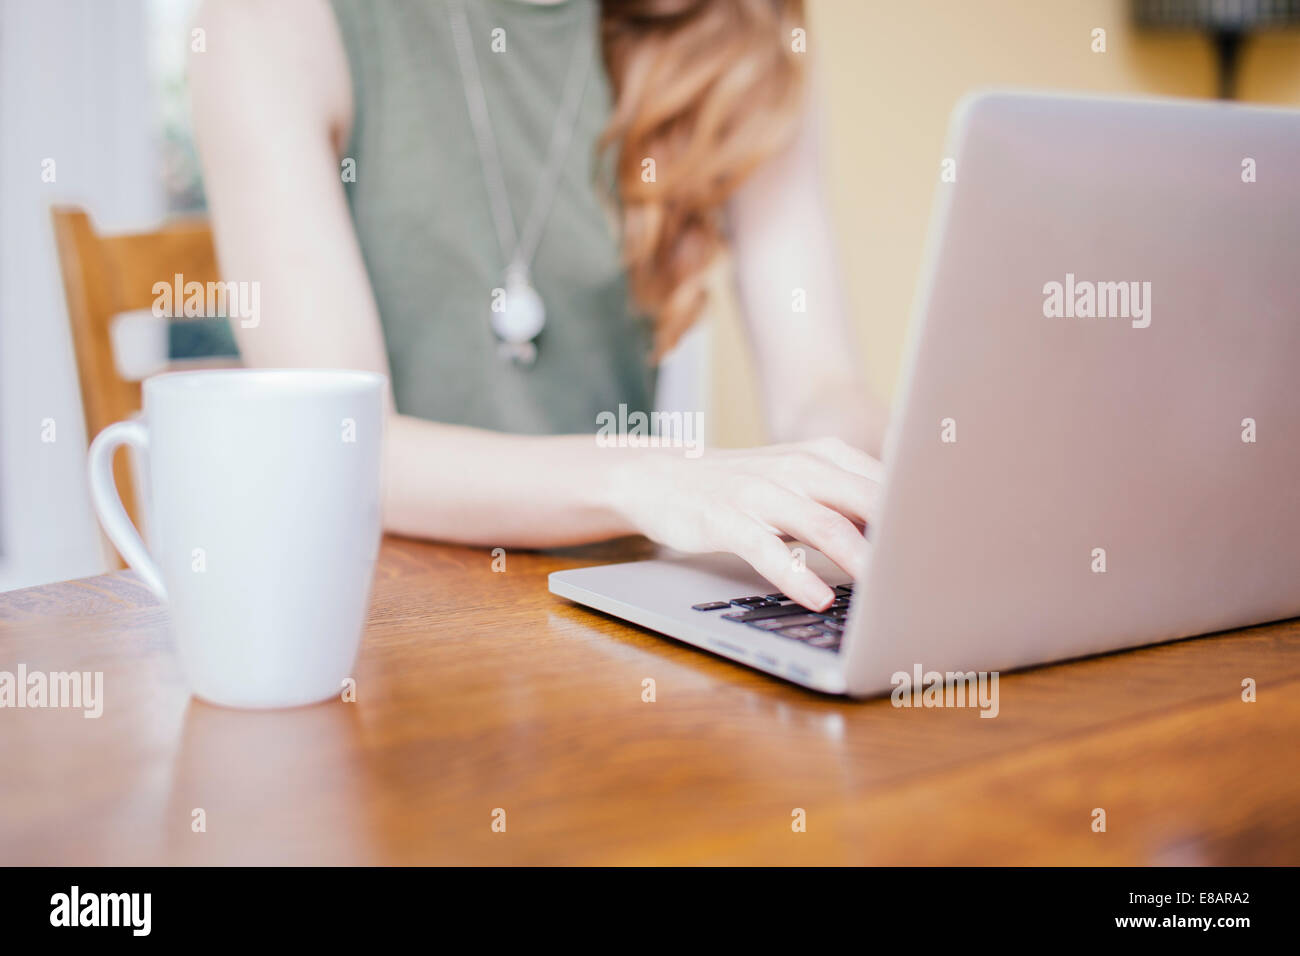 Aufnahme der jungen Frau, die Eingabe auf Laptop am Esstisch beschnitten Stockfoto